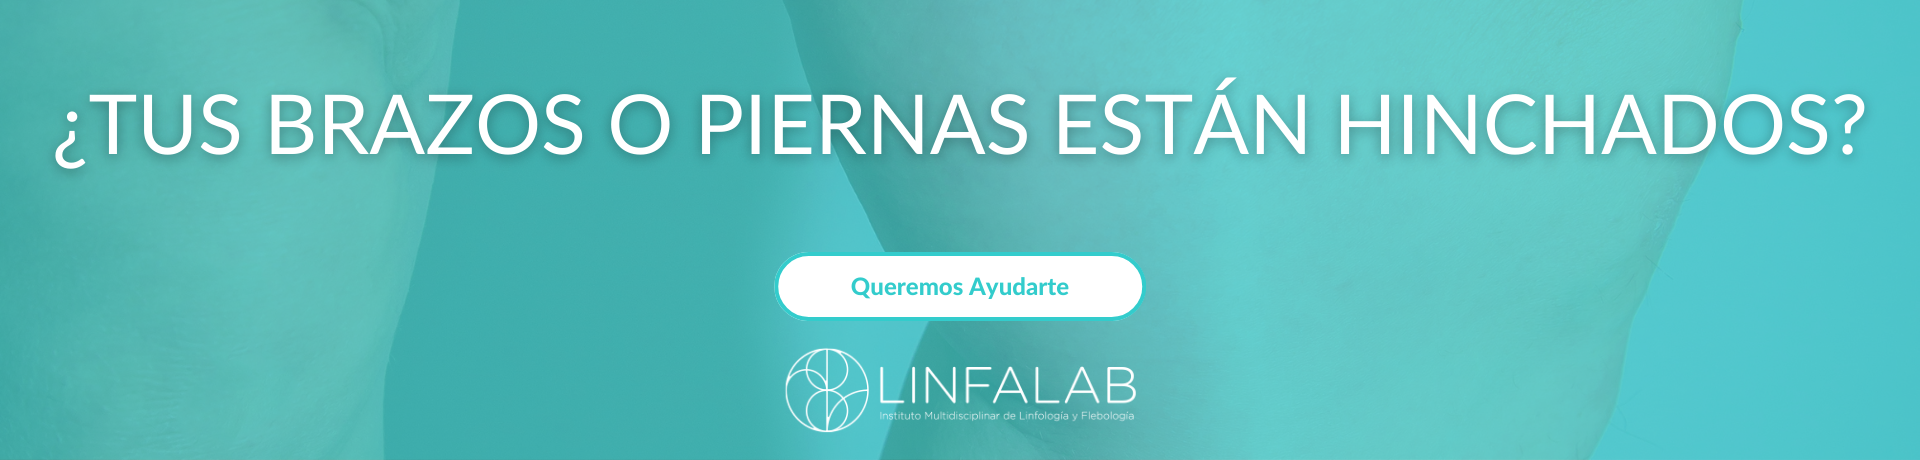 Brazos y Piernas Hinchados - slide 2 - LINFALAB.COM